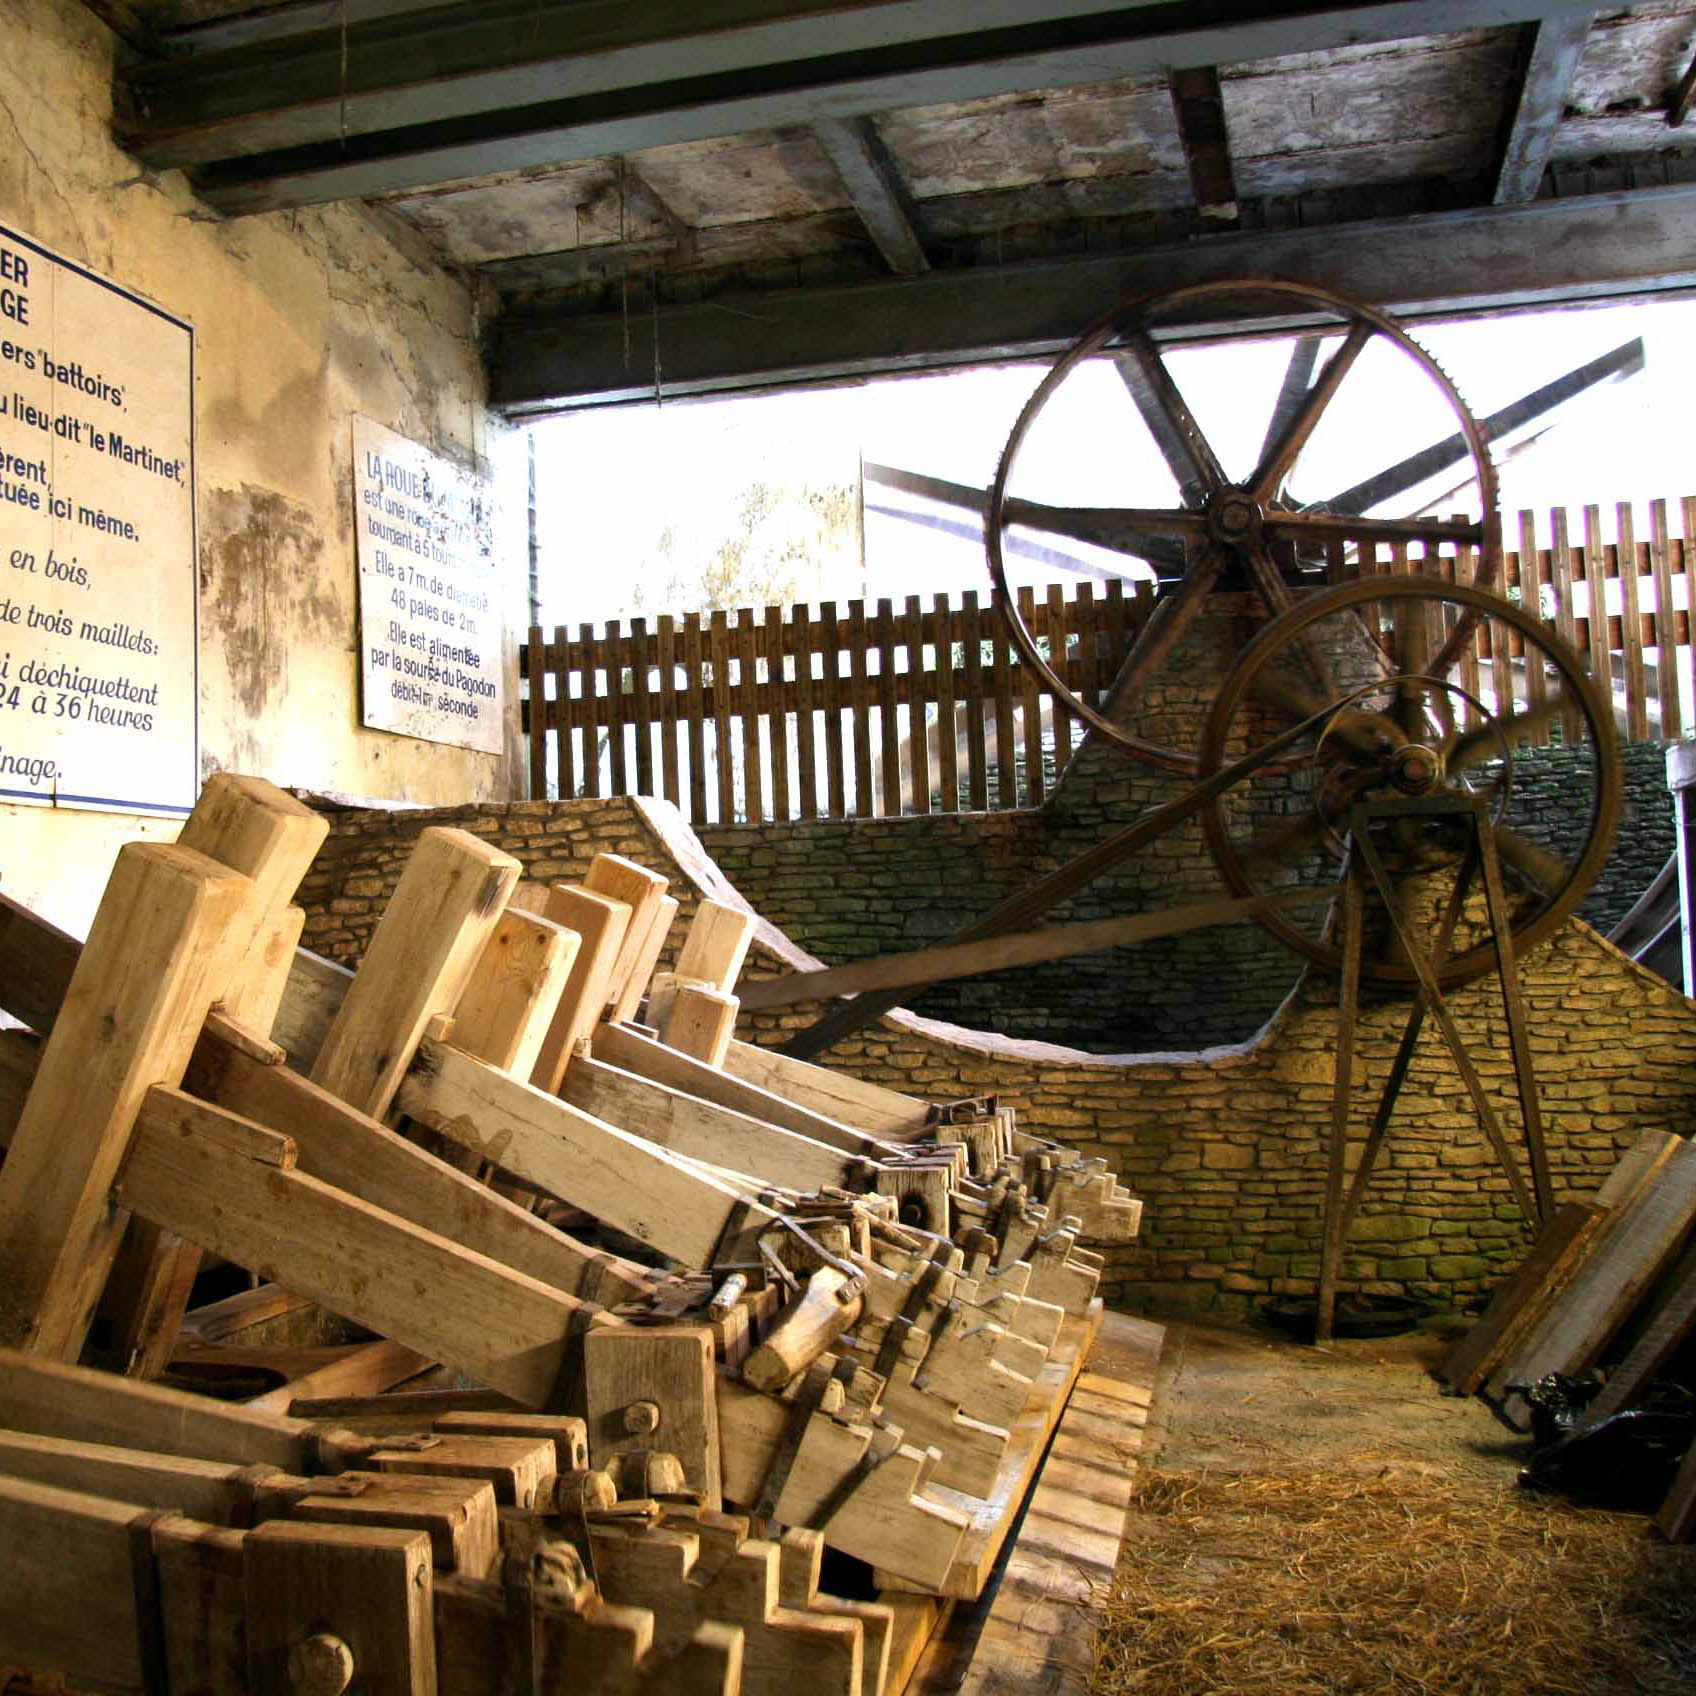 Mini-rouleau de papier sulfurisé - Moulin de Moulbaix